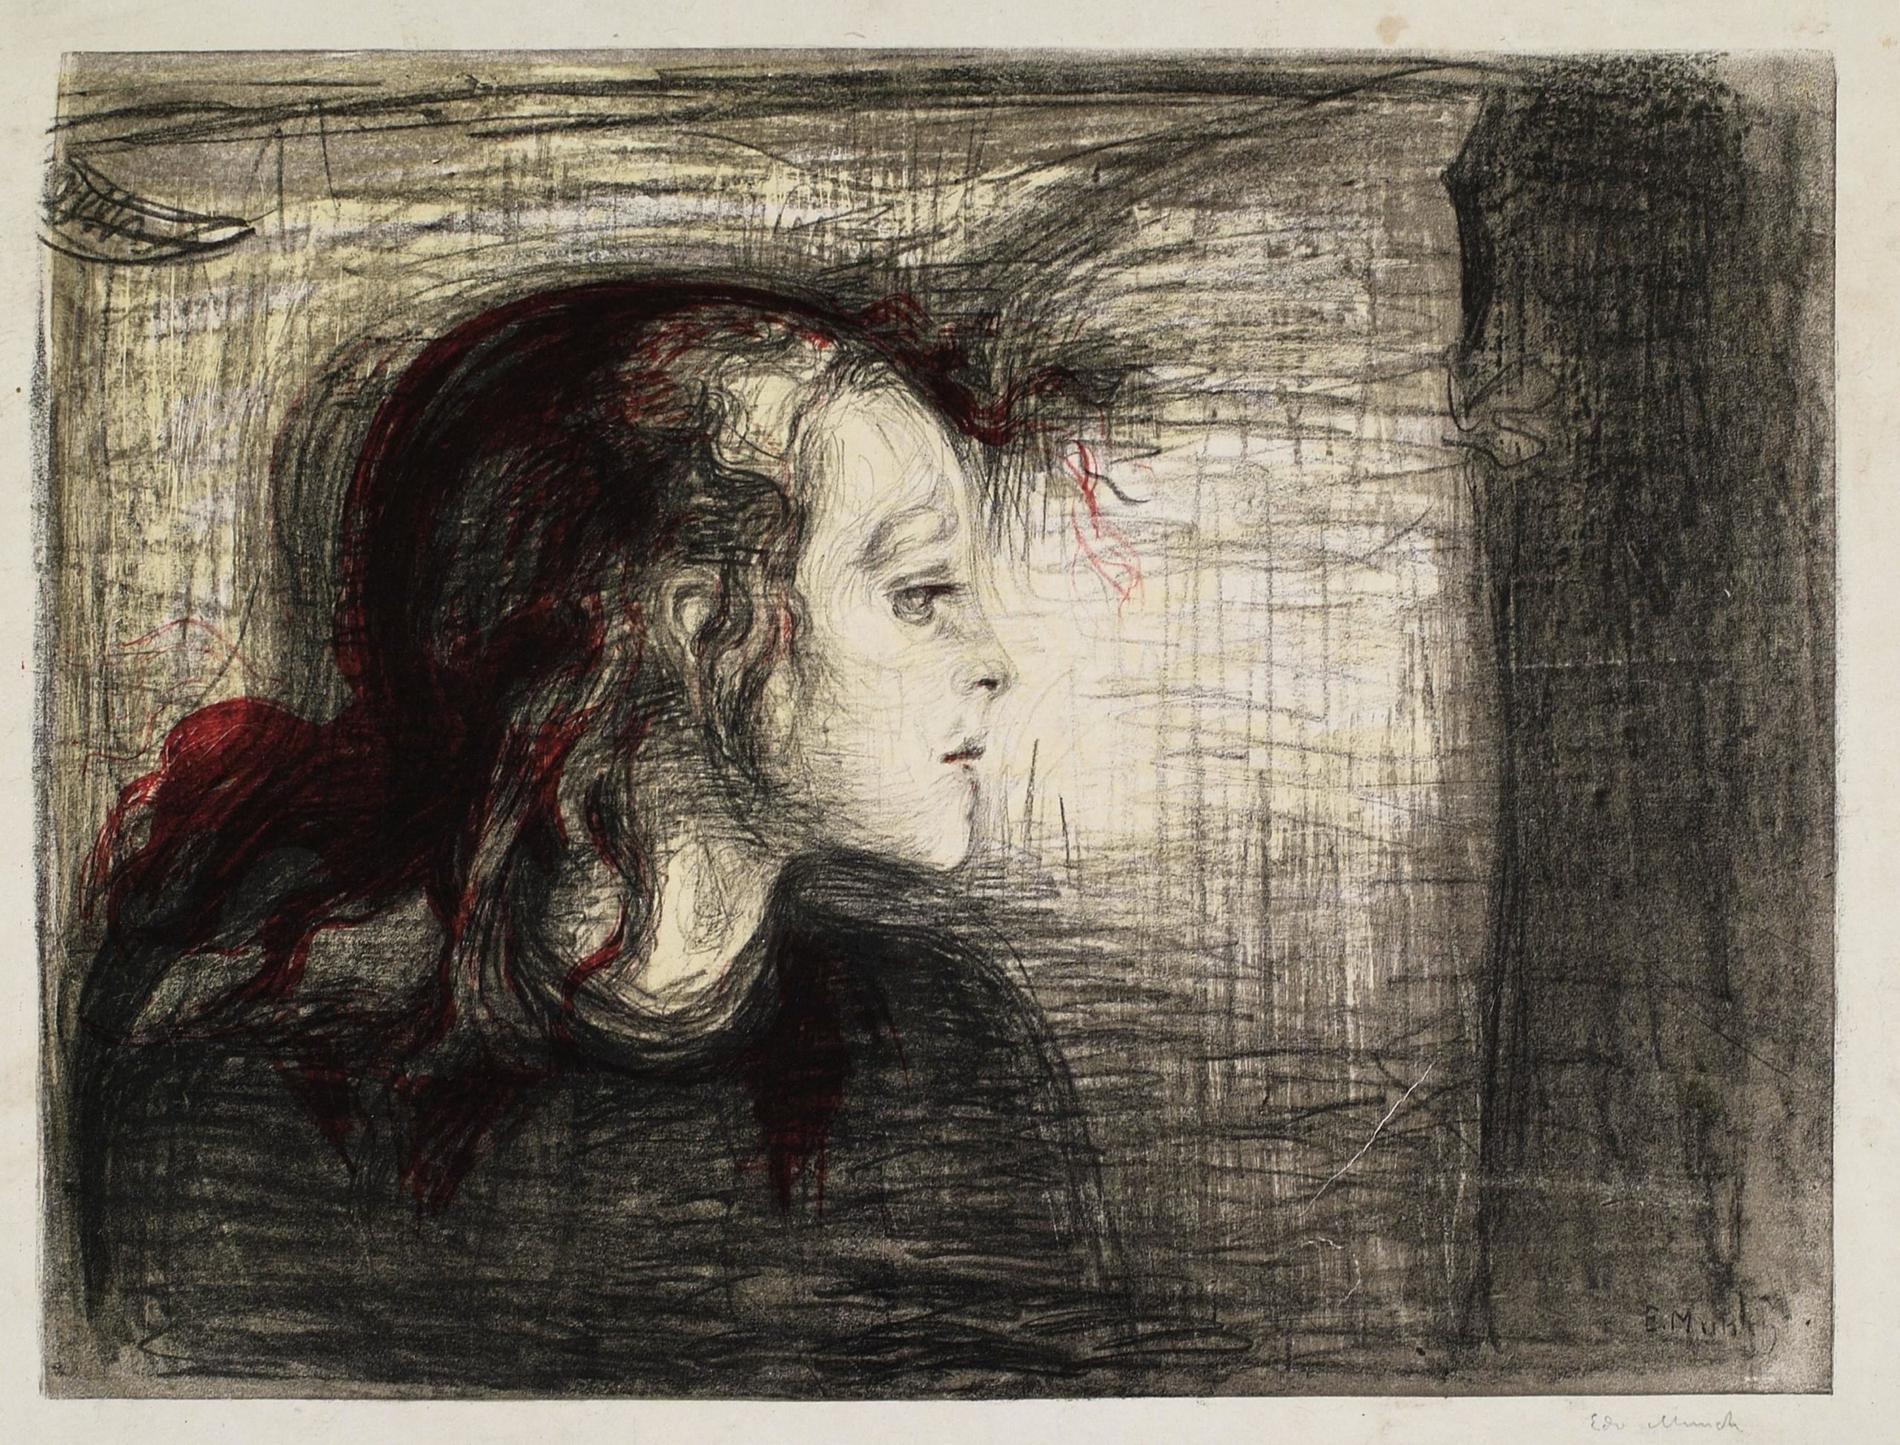 Vid sidan Edvard Munchs fotografier visas en del av hans grafiska konst, däribland "Det sjuka barnet" från 1896. Pressbild.